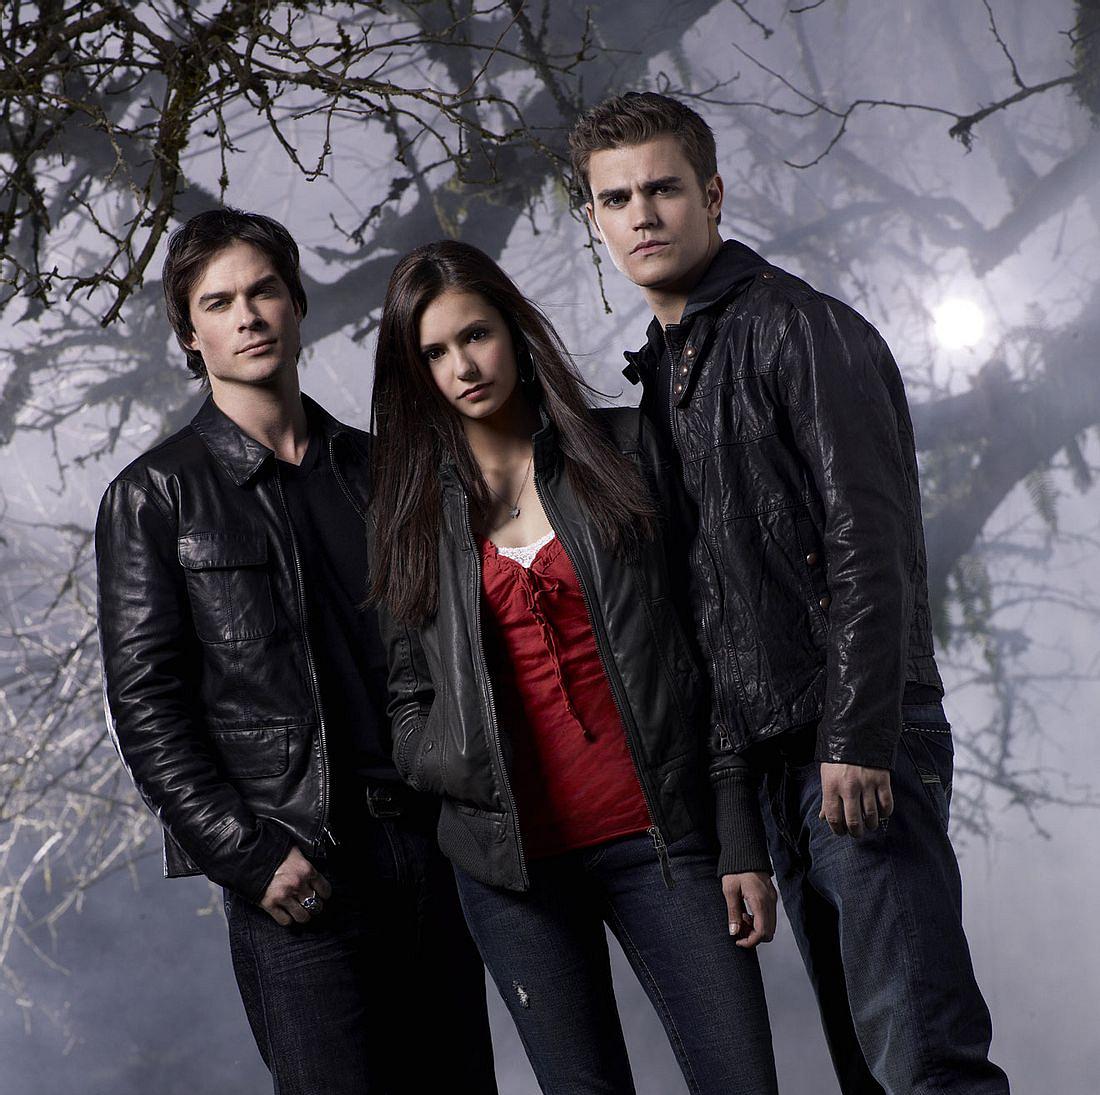 The Vampire Diaires startete im Jahr 2009 und gehörte zu den erfolgreichsten Serien der darauffolgenden Jahre!